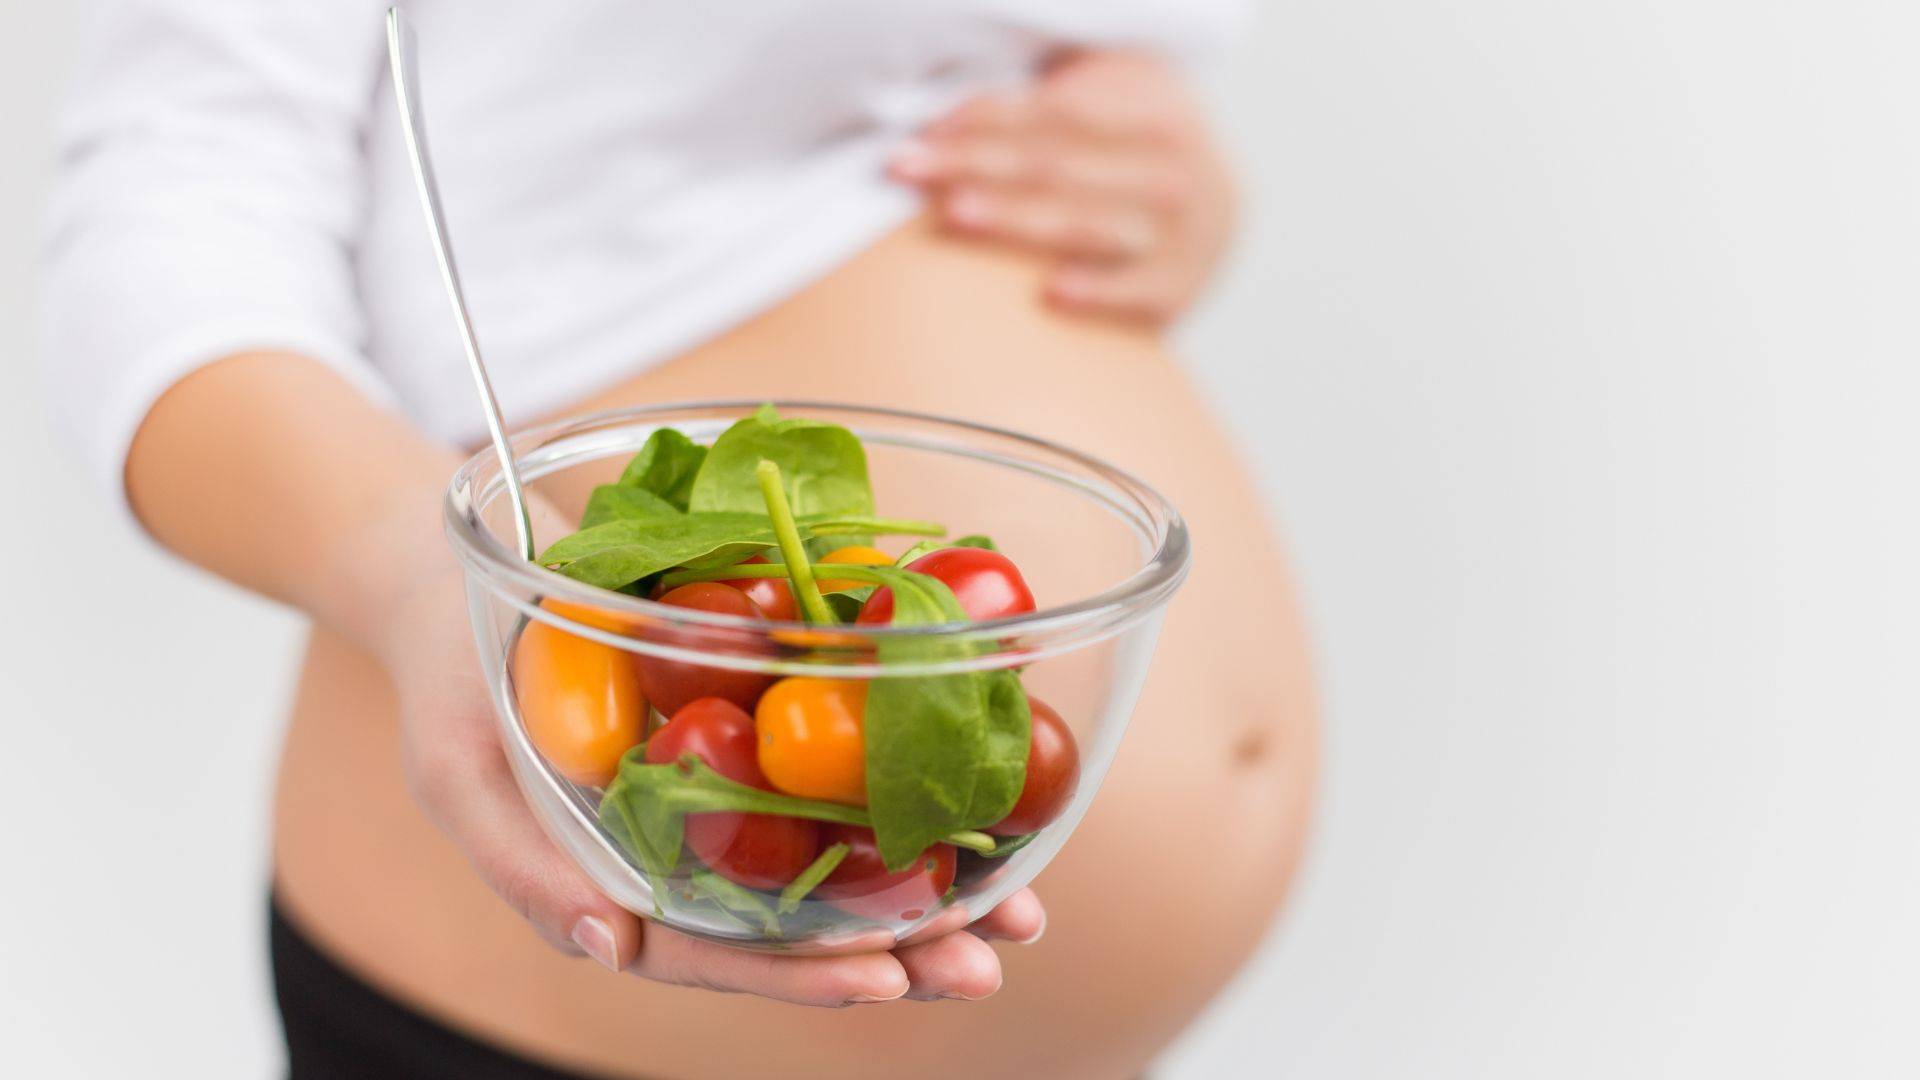 Mulher grávida se alimentando de forma saudável